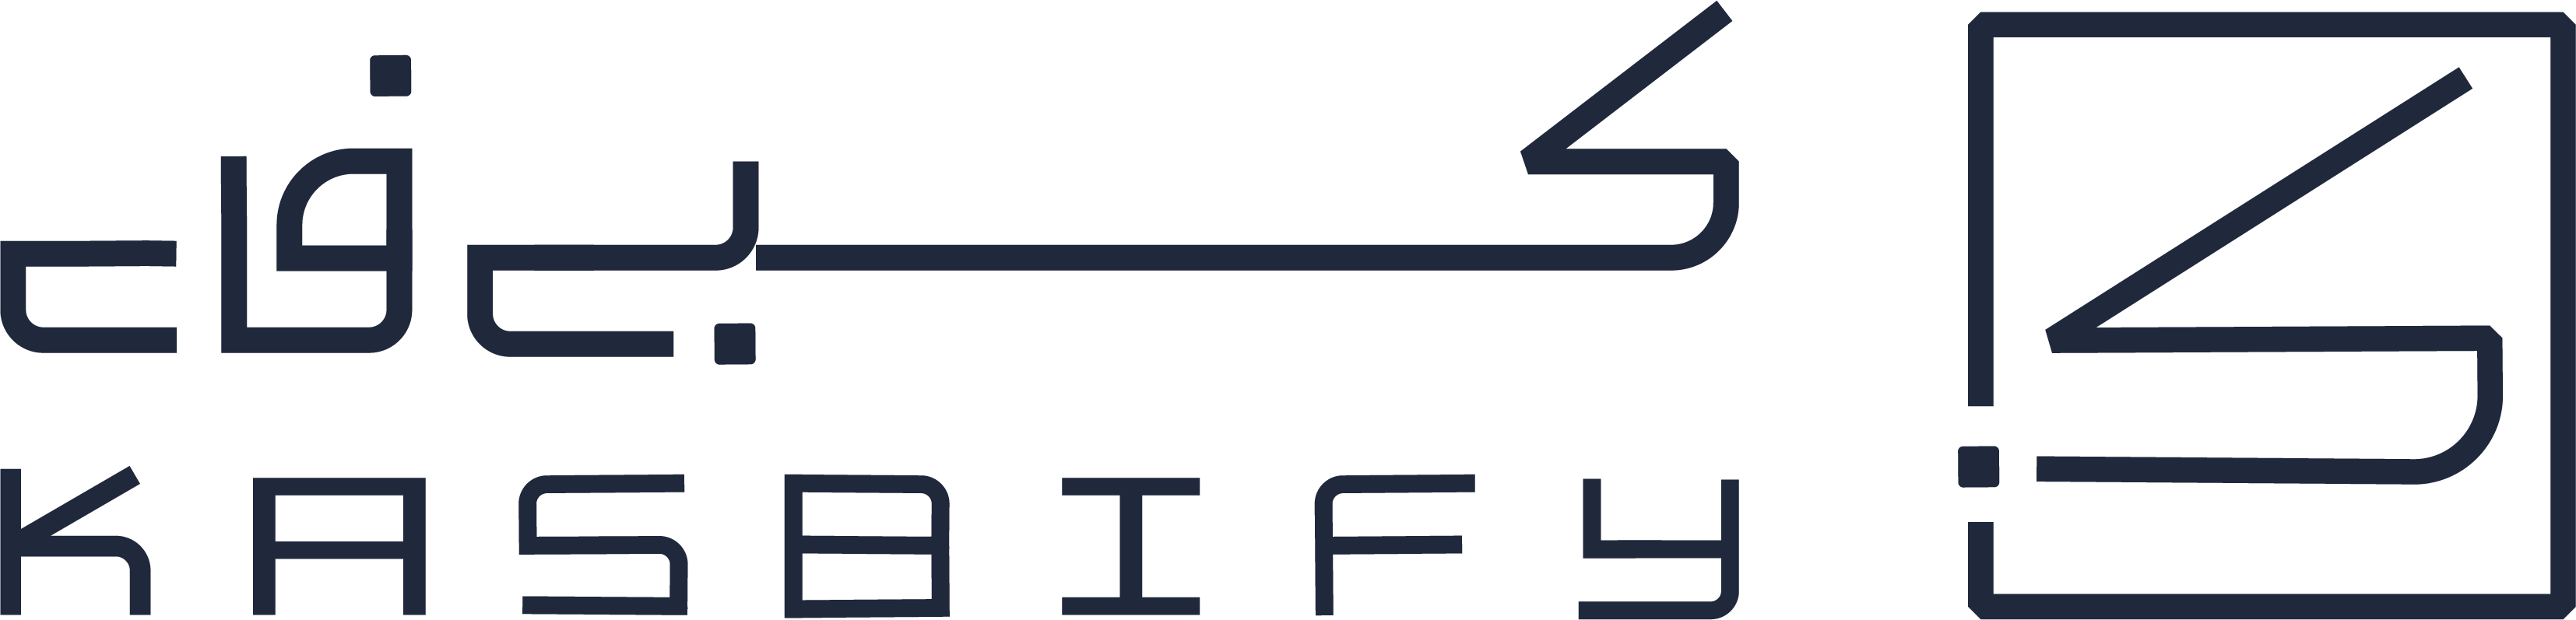 logo header 3